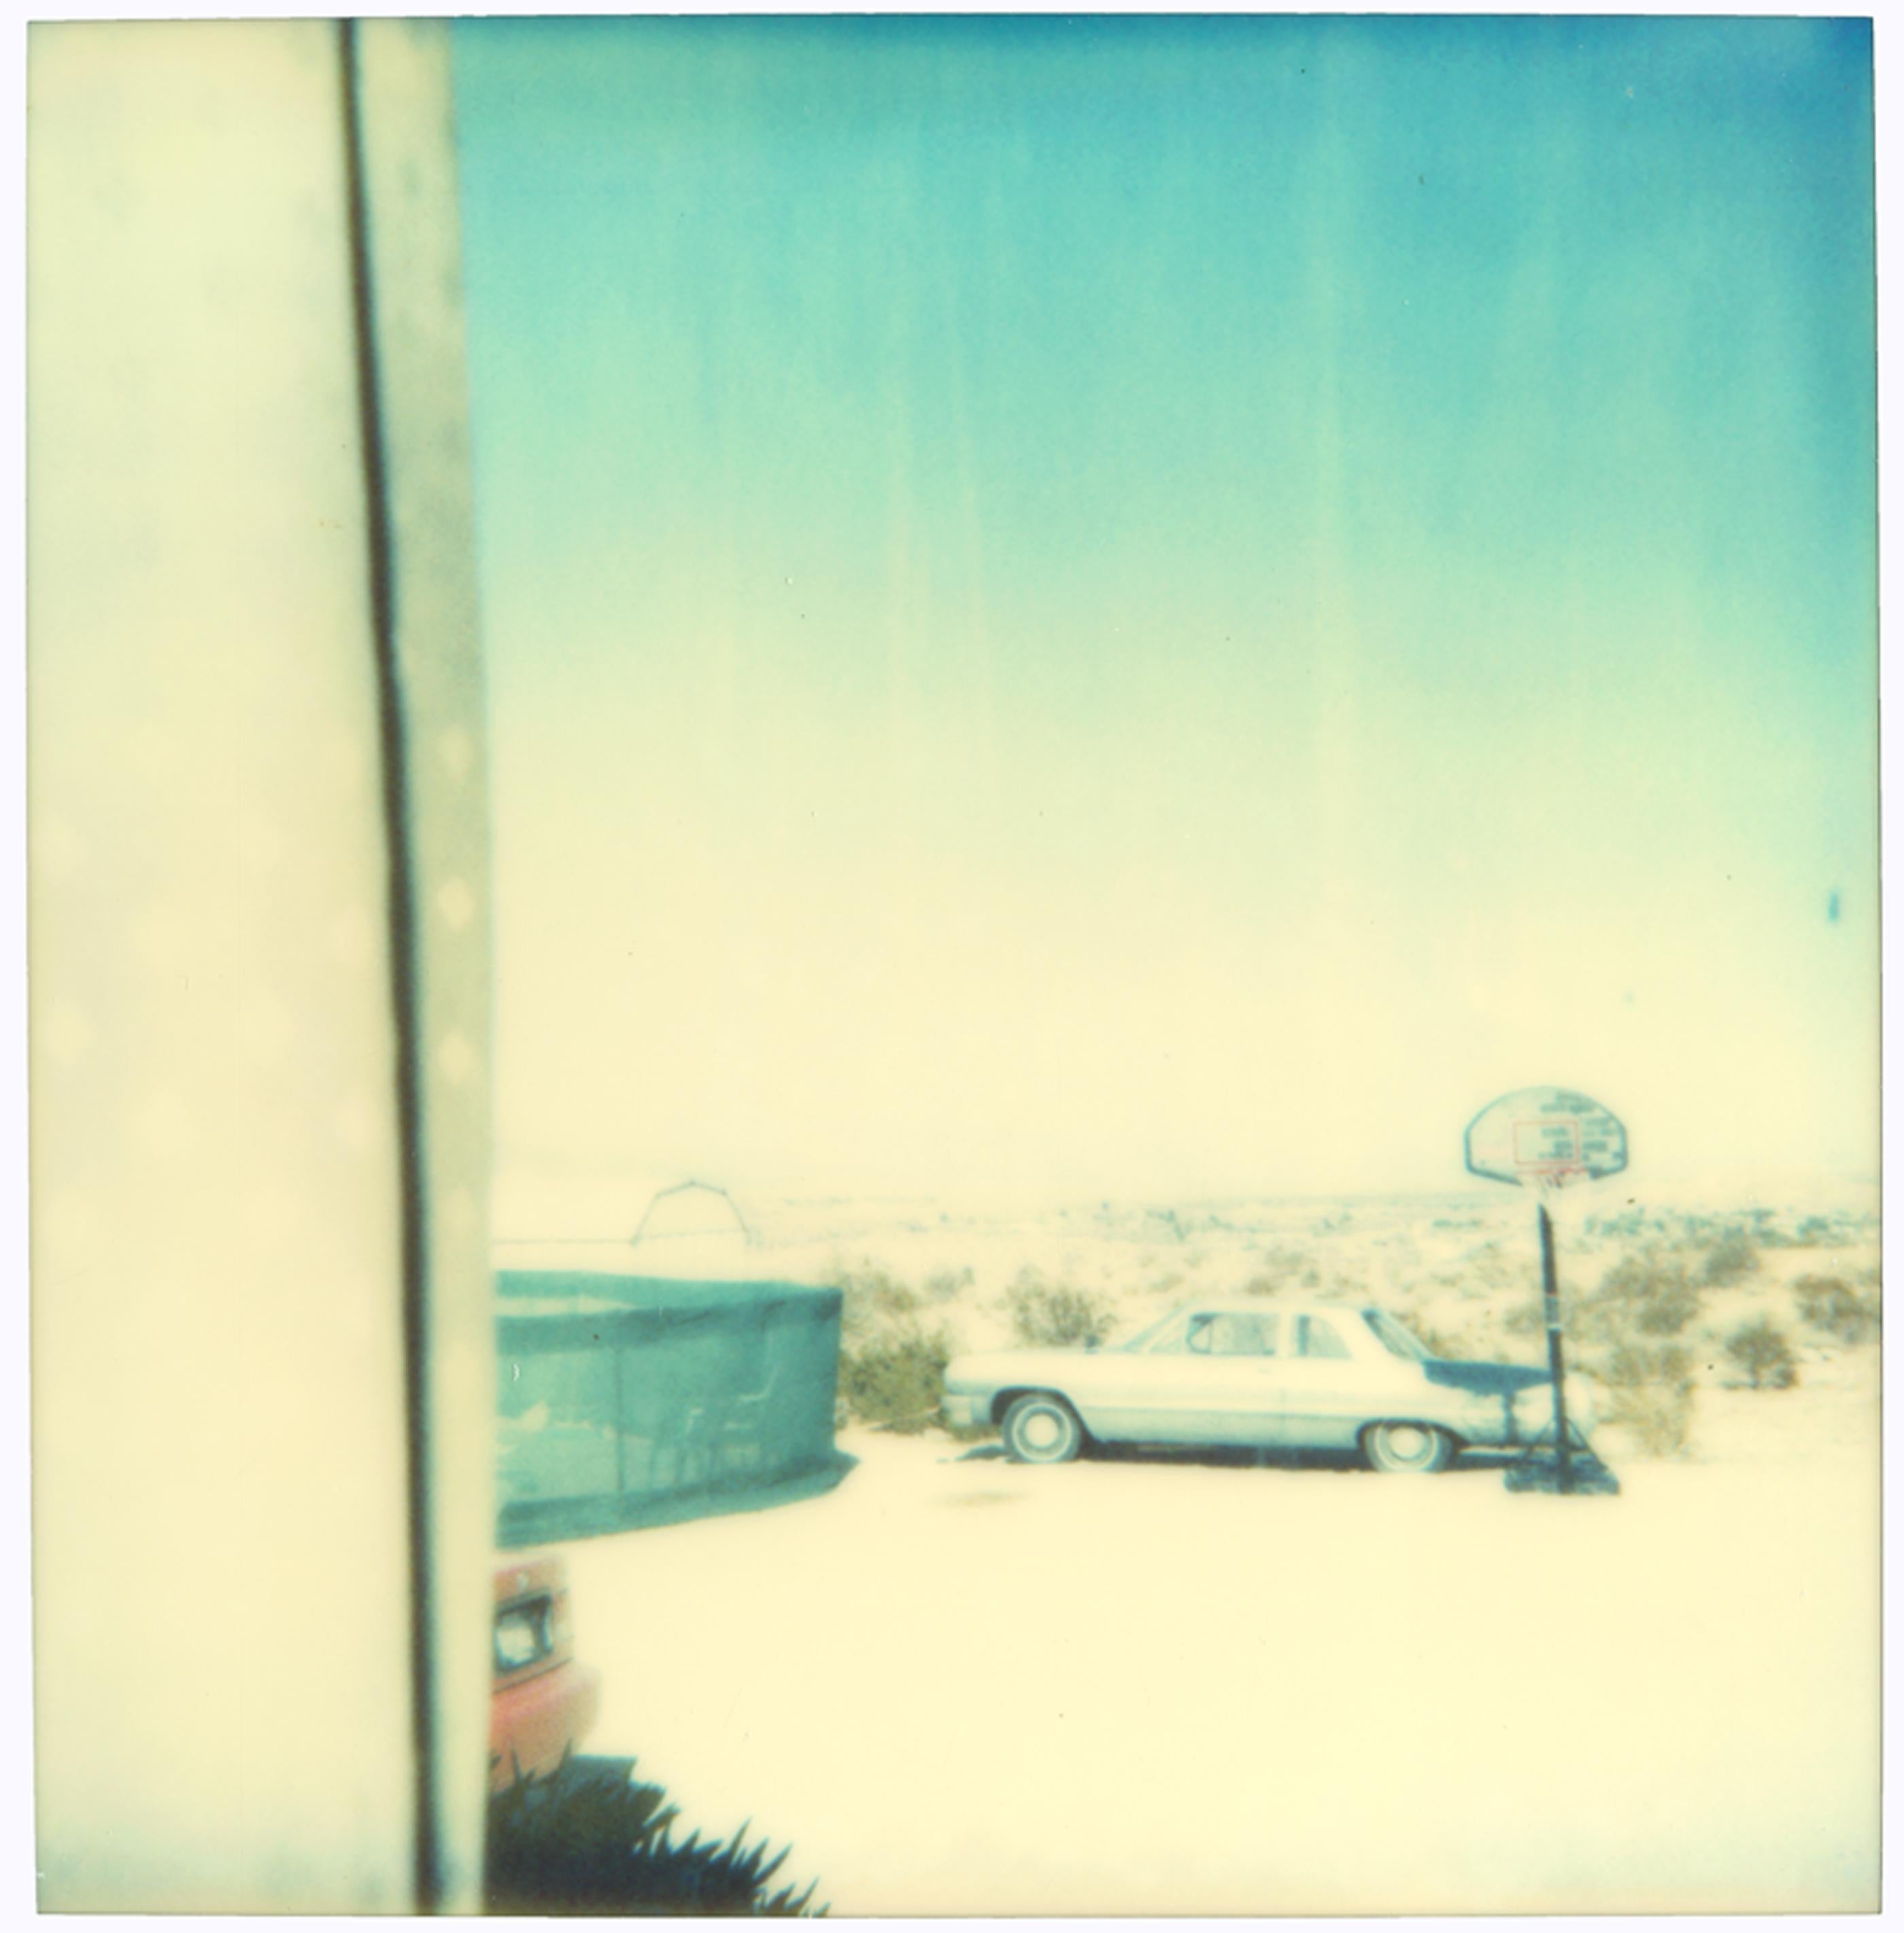 Sans titre (29 Palms, CA) - Polaroid, Analog, Landscape, Contemporary, Color